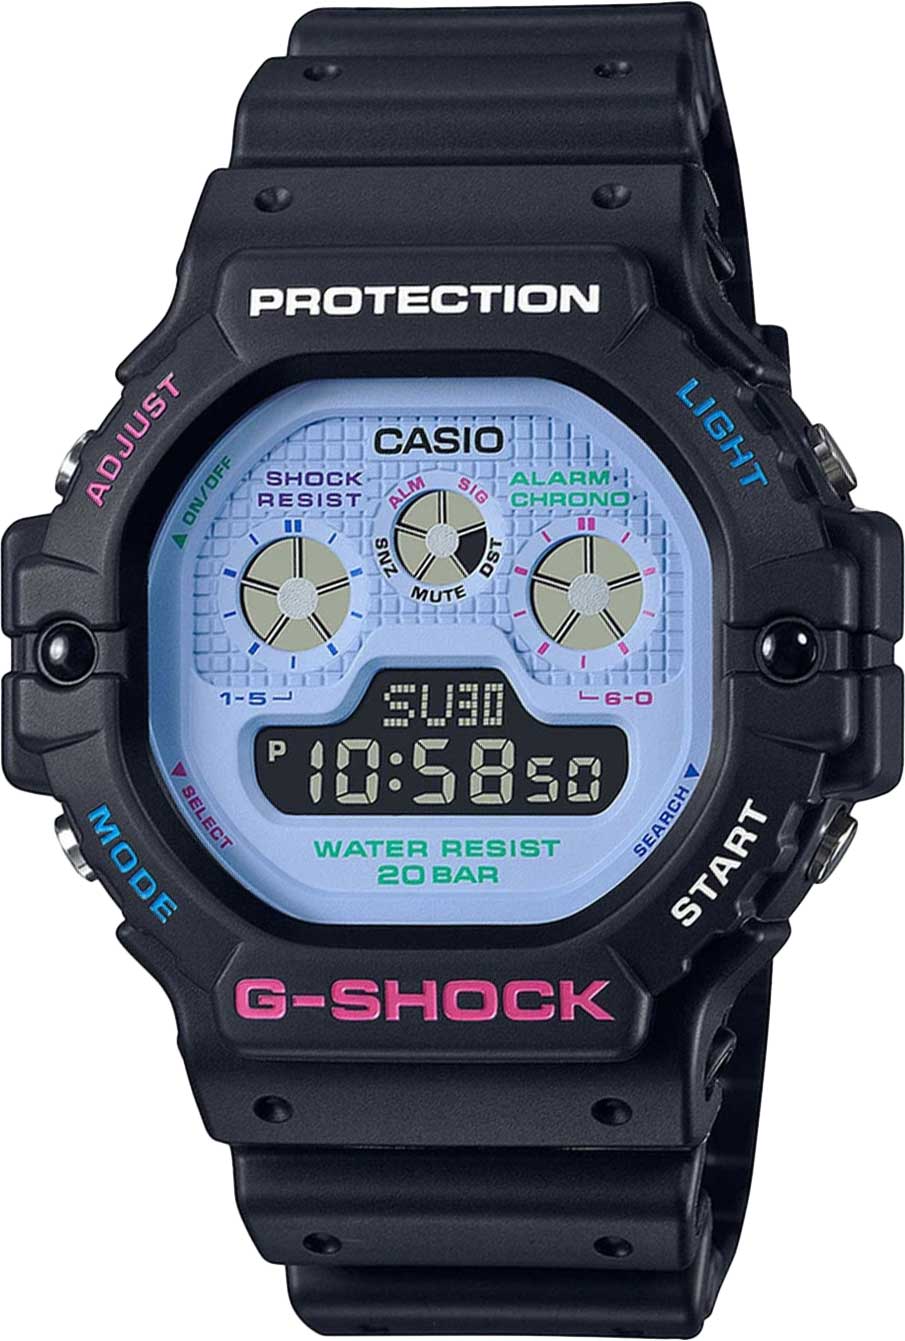    Casio G-SHOCK DW-5900DN-1  